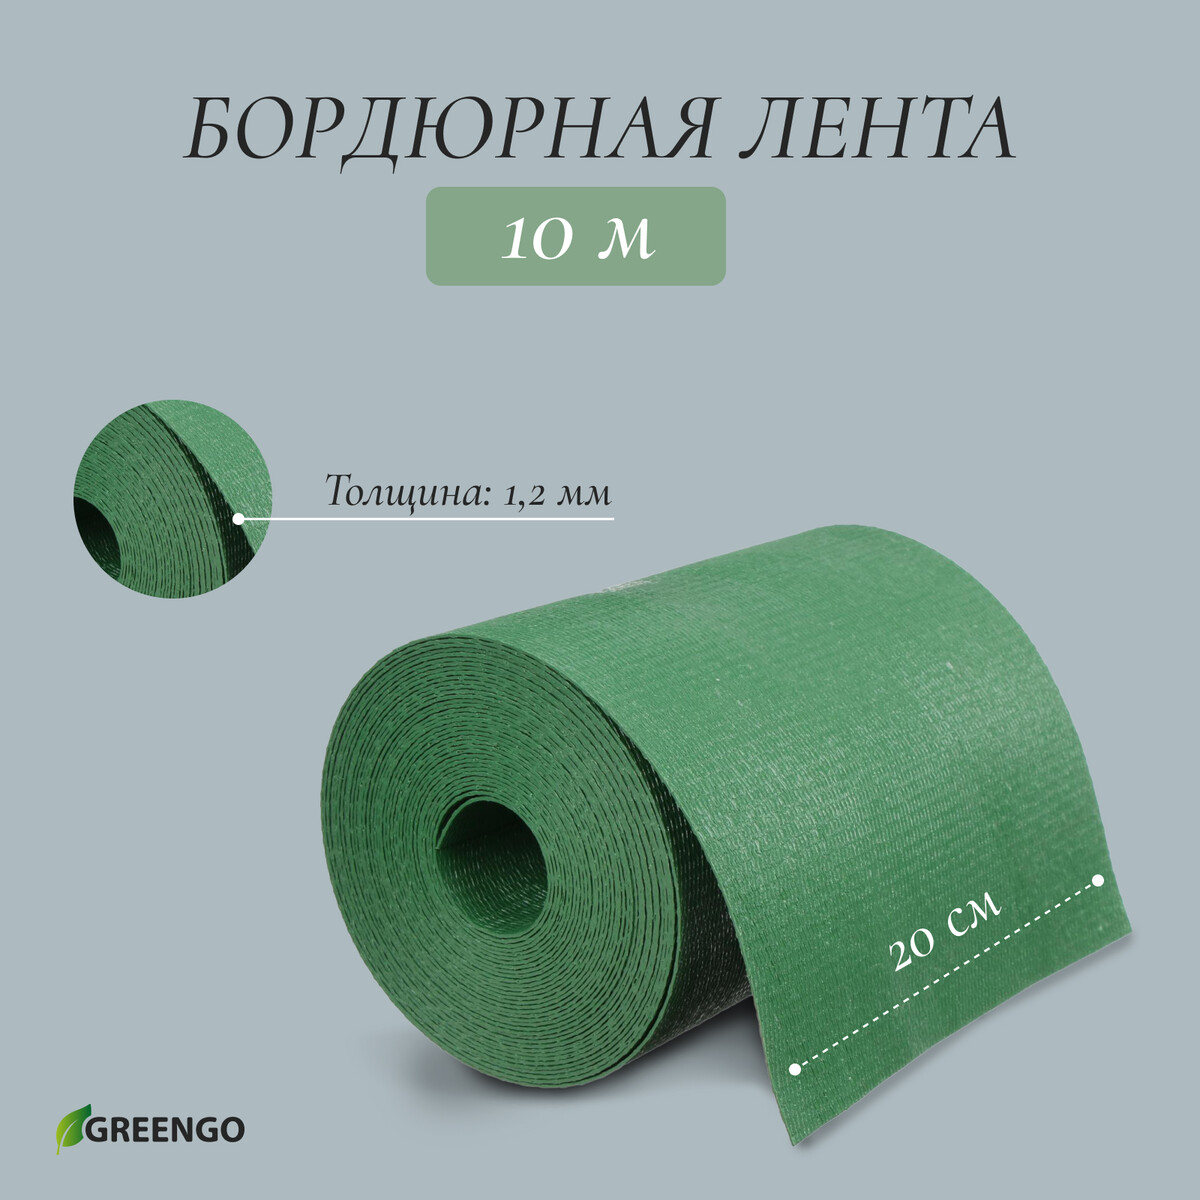 Лента бордюрная, 0.2 × 10 м, толщина 1.2 мм, пластиковая, зеленая, greengo лента бордюрная 0 15 × 9 м толщина 0 6 мм пластиковая гофра зеленая greengo